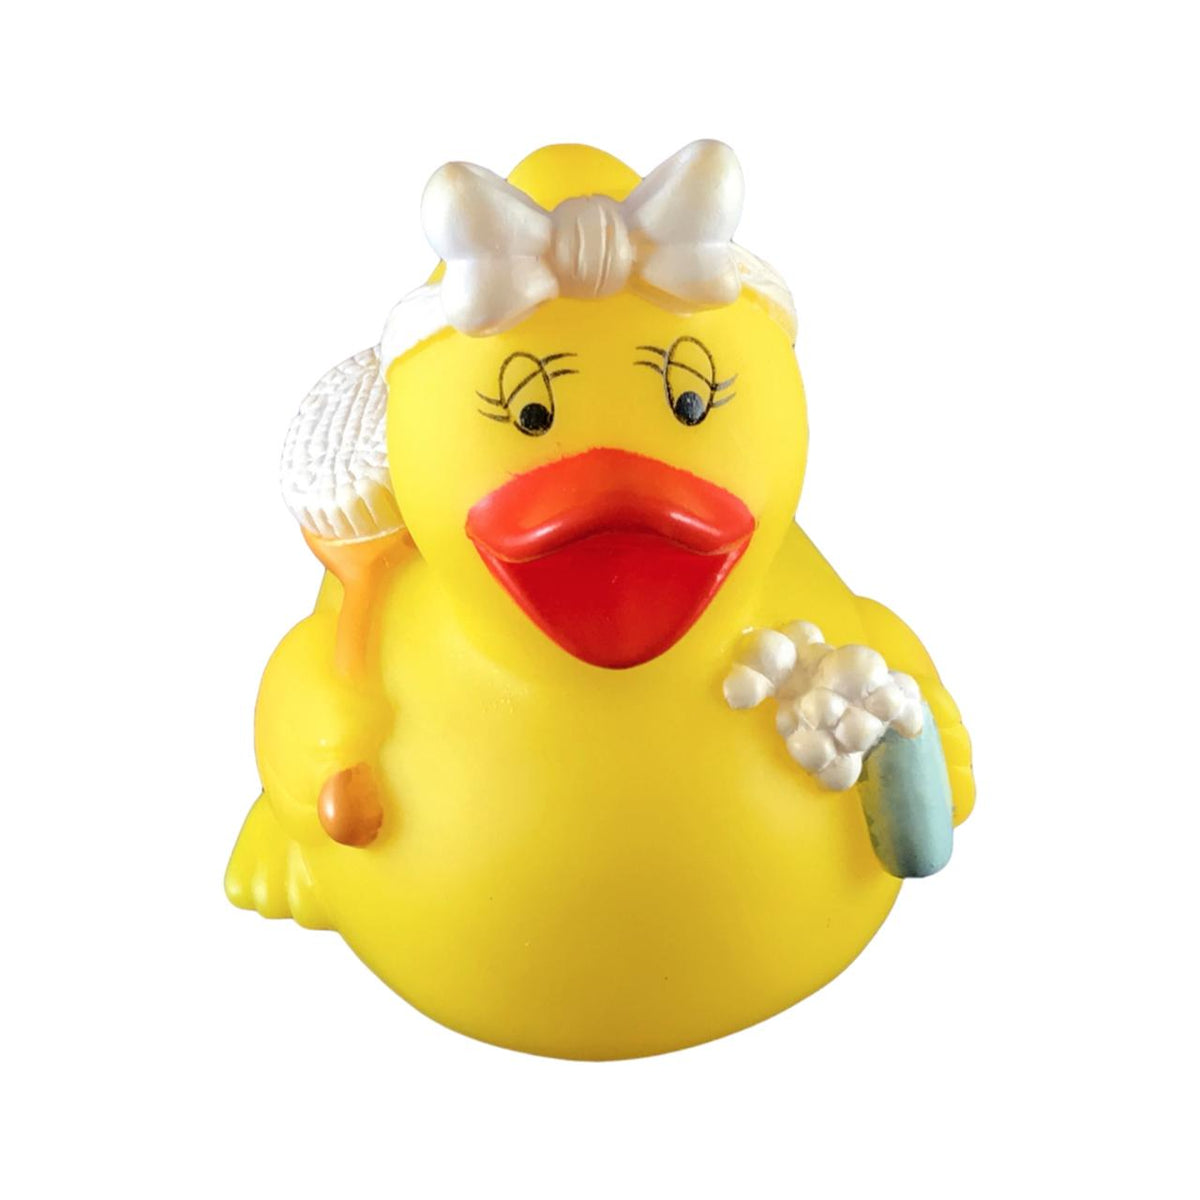 Bathing Rubber Duck Personalized Rubber Ducks For Sale In Bulk